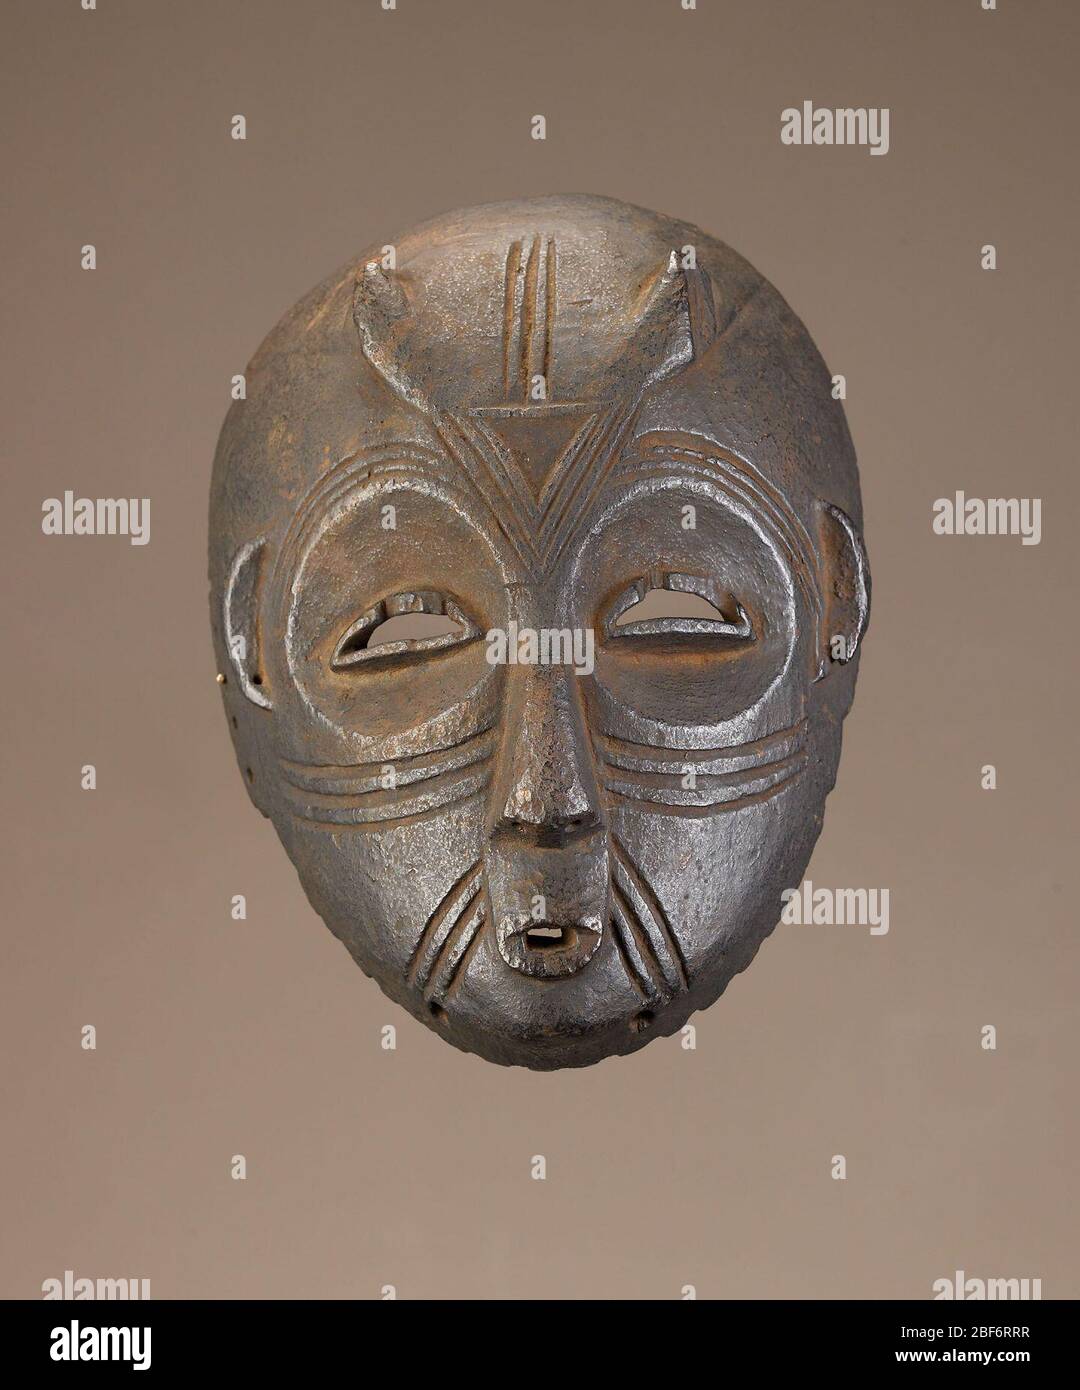 Máscara facial. Las características humanas y animales se unen en esta  máscara inusual y bastante rara de la región de Bembe en la República  Democrática del Congo. Las máscaras de este tipo